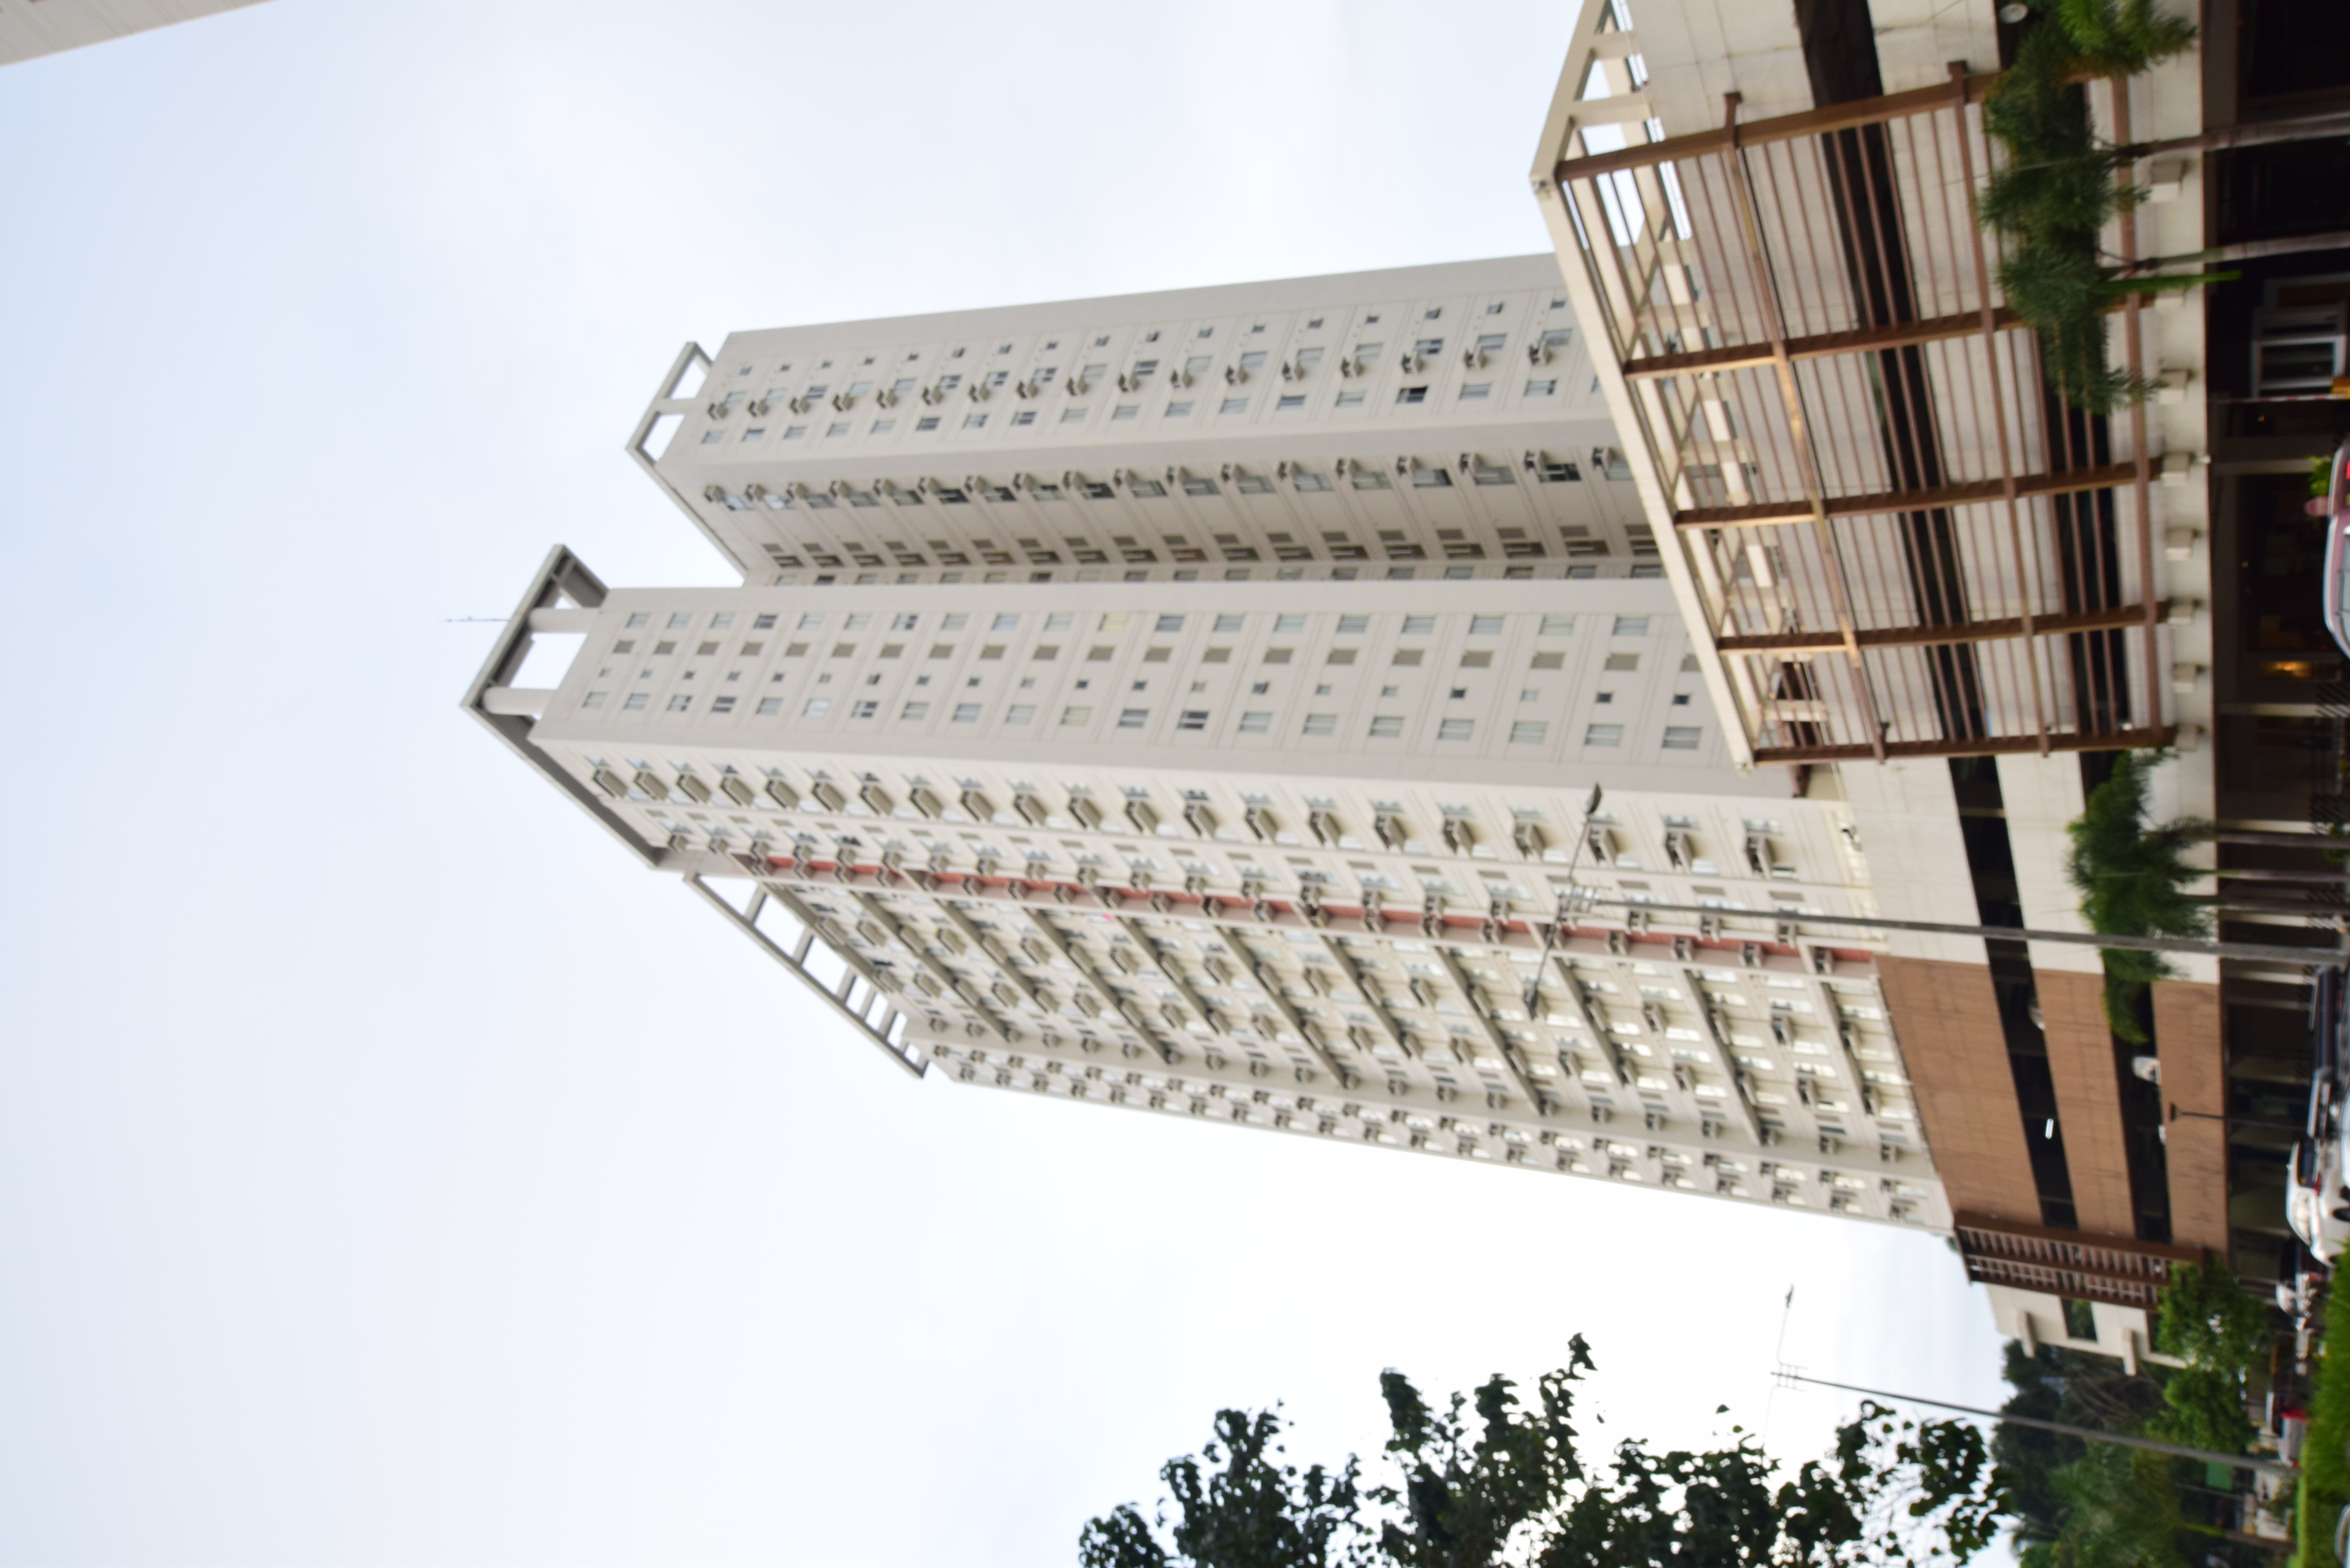 Avida Towers Cebu(アビダタワーズセブ）は通称Avida(アビダ）と呼ばれていますが、2019年に近くにもう1つ別のタワーが建ったため、以前からあるこちらは『アビダセブ』と呼ばれ、新しいタワーは『アビダリアラ』と呼ばれています。アビダセブはリアラよりも以前からあるコンドミニアムのため、リアラよりも少しリーズナブルに賃貸、売買がされています。現在は、P15,000というリーズナブルな価格でスタジオタイプのユニットを借りることが出来ます♪